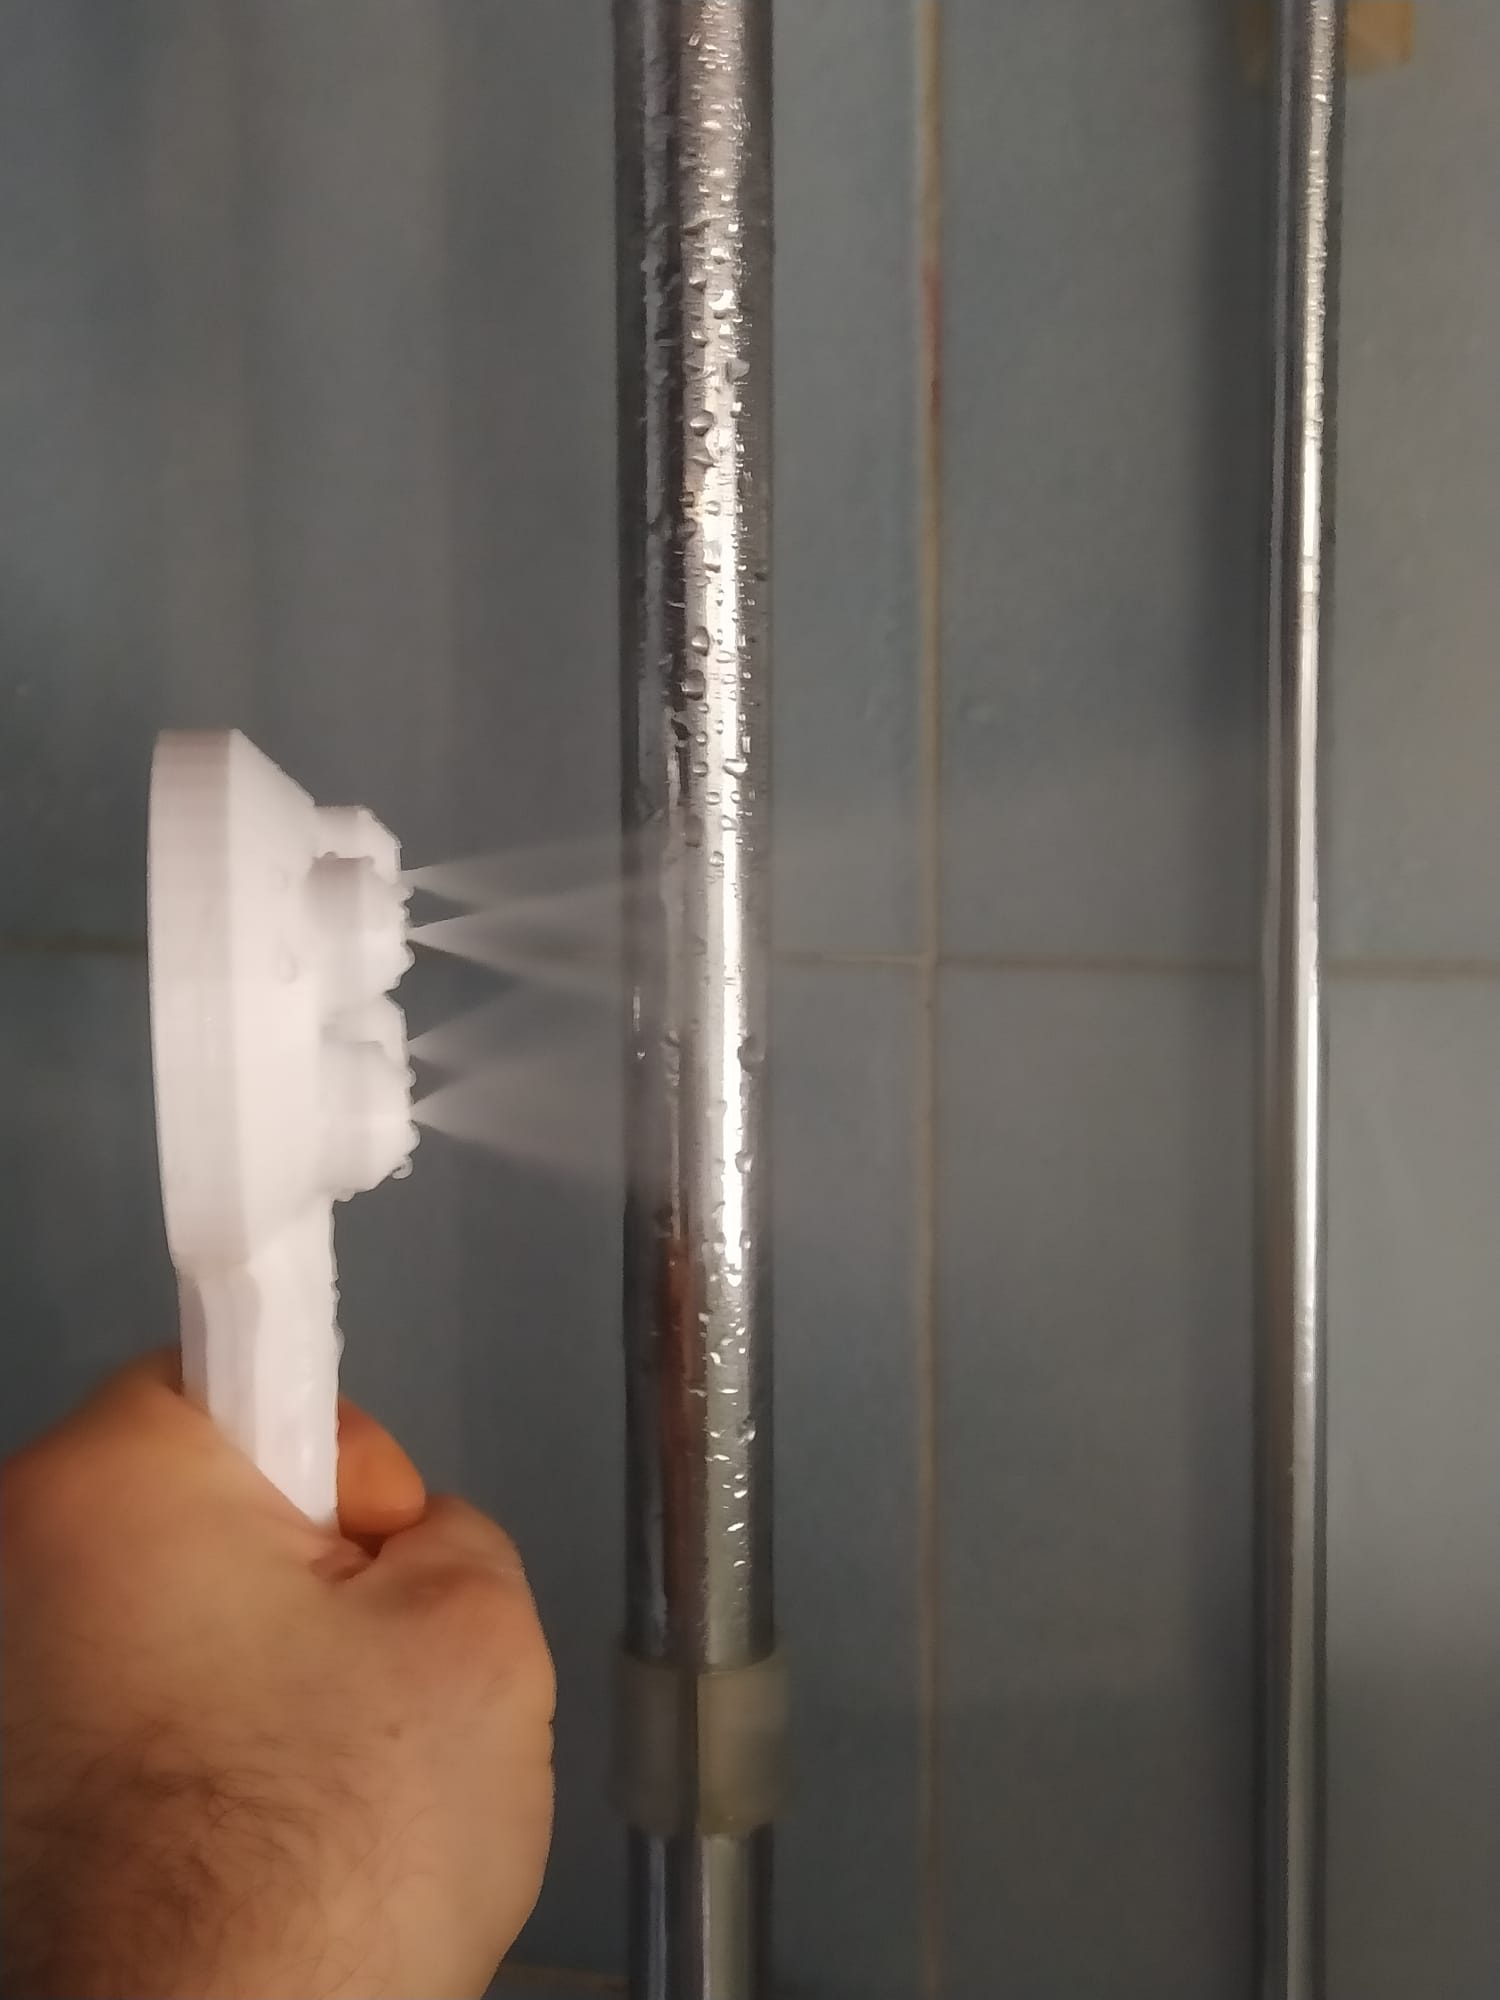 Shower head water saver